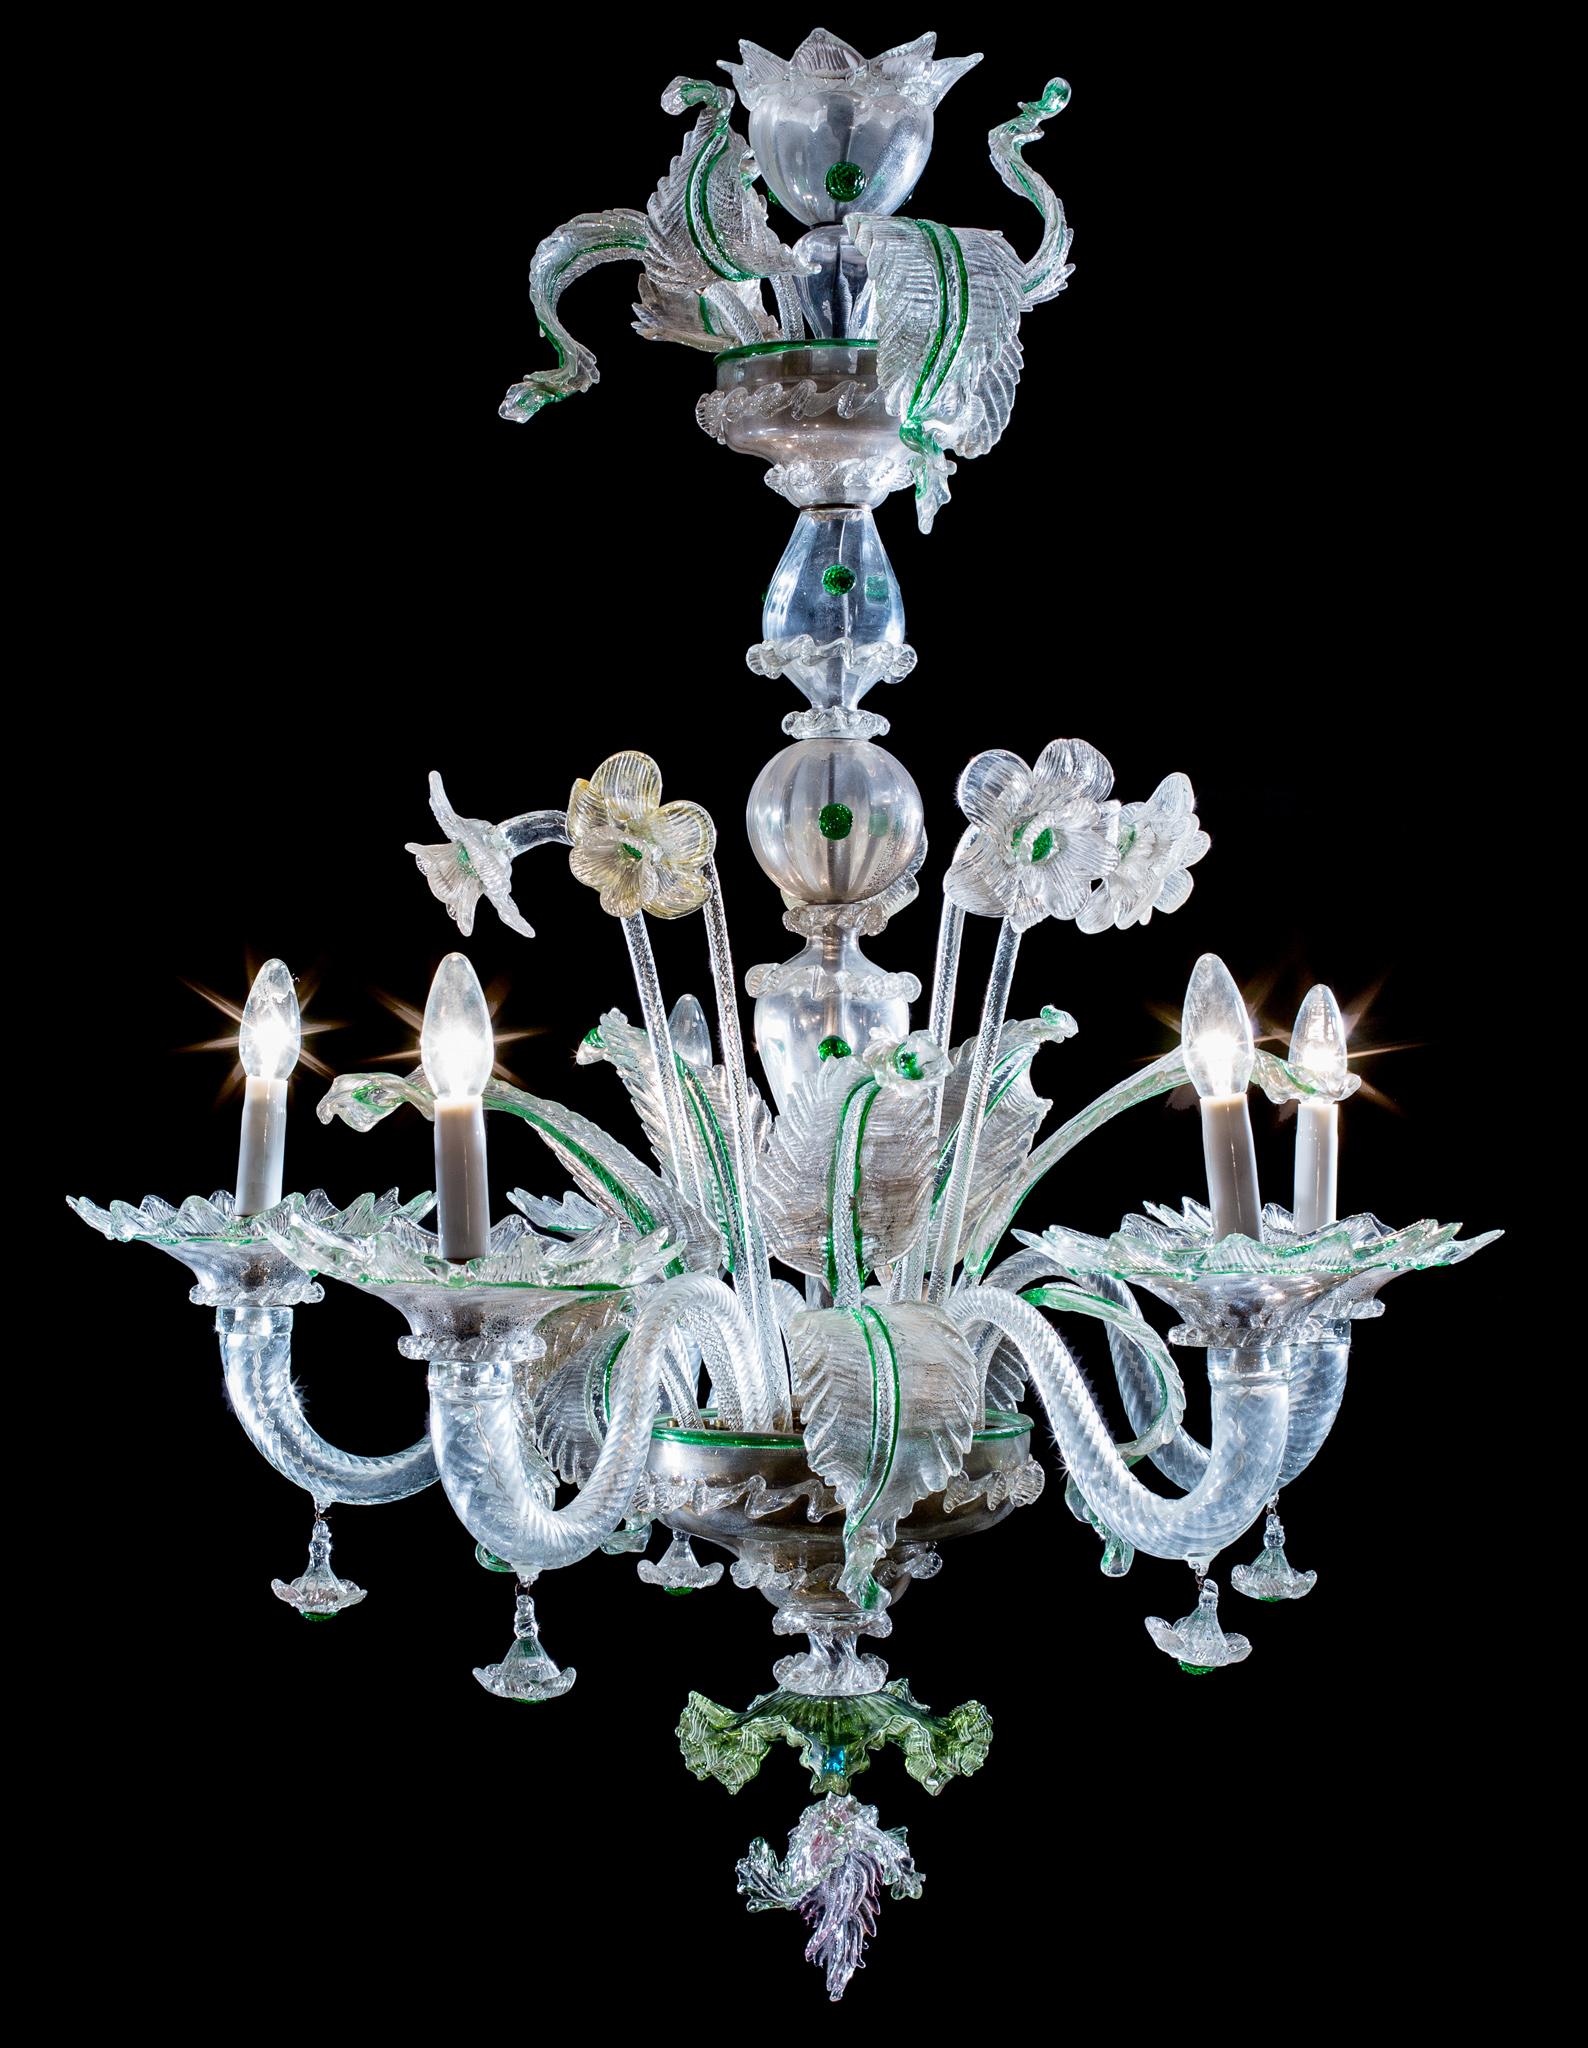 Diese Leuchte ist ein schönes Beispiel für den unverwechselbaren Murano-Stil, der die klassische Struktur eines Kronleuchters mit einer zentralen Achse aus übereinander gestapelten mundgeblasenen Balustern und Spindeln mit einer Vielzahl von